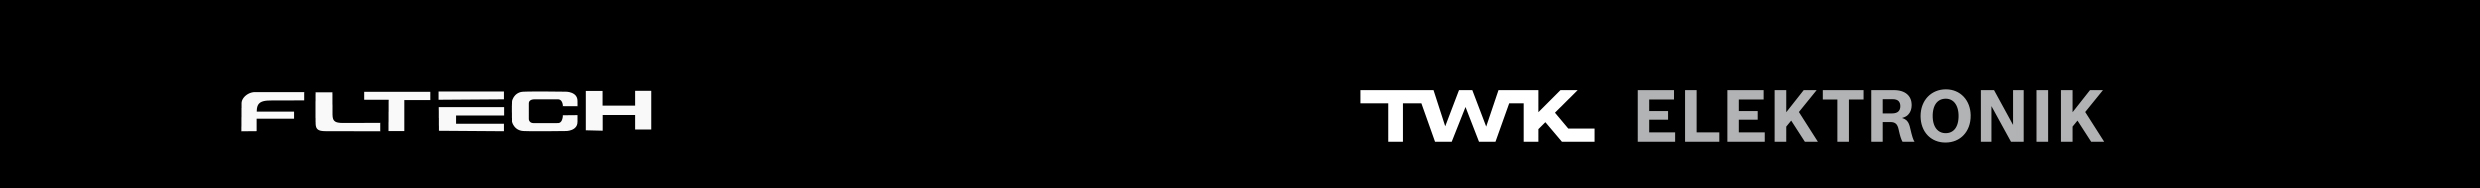 Fltech logo